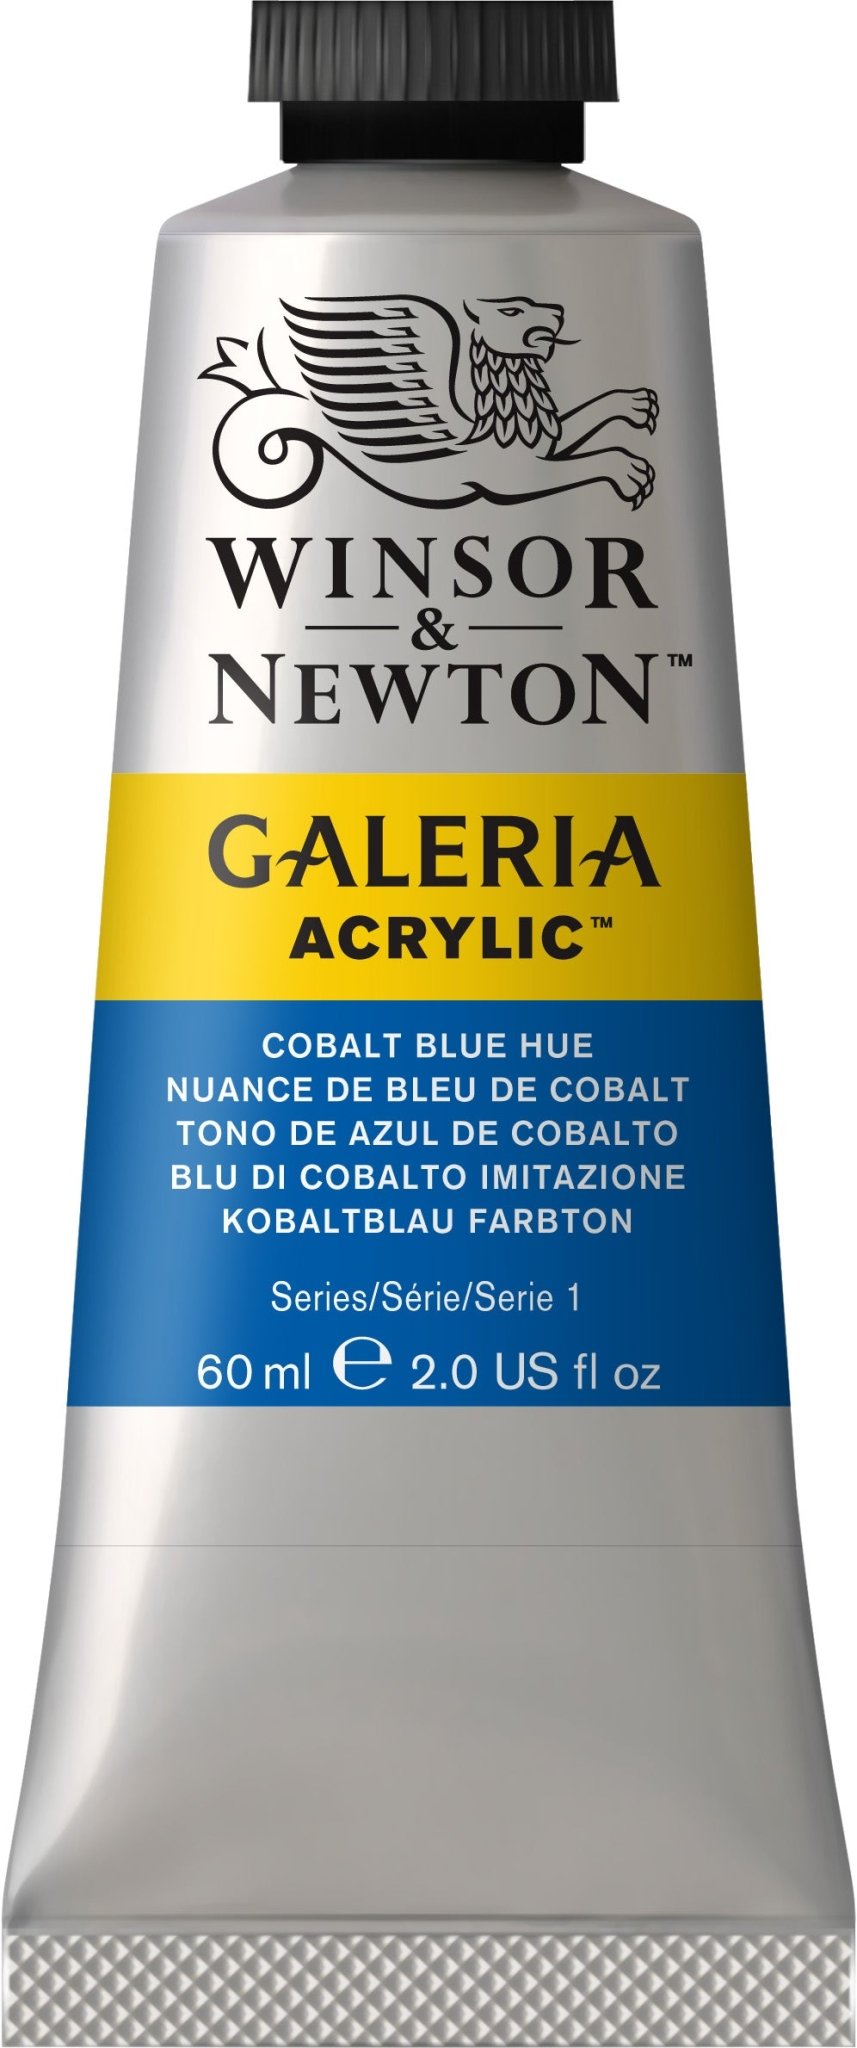 W & N Galeria Acrylic 60ml Cobalt Blue Hue - theartshop.com.au